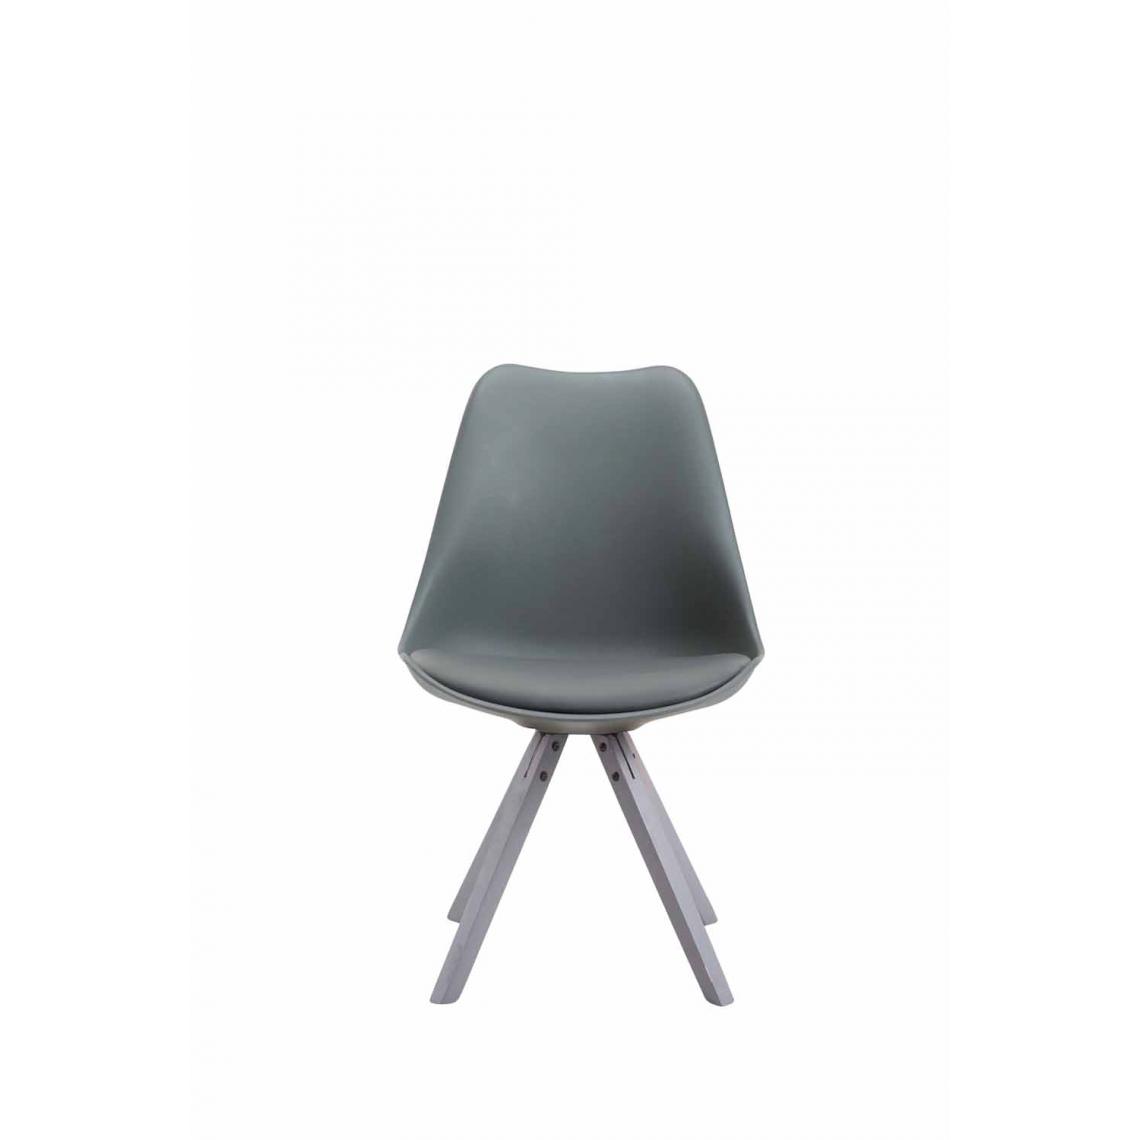 Icaverne - Chic Chaise visiteur selection Katmandou cuir synthétique Carré gris couleur gris - Chaises